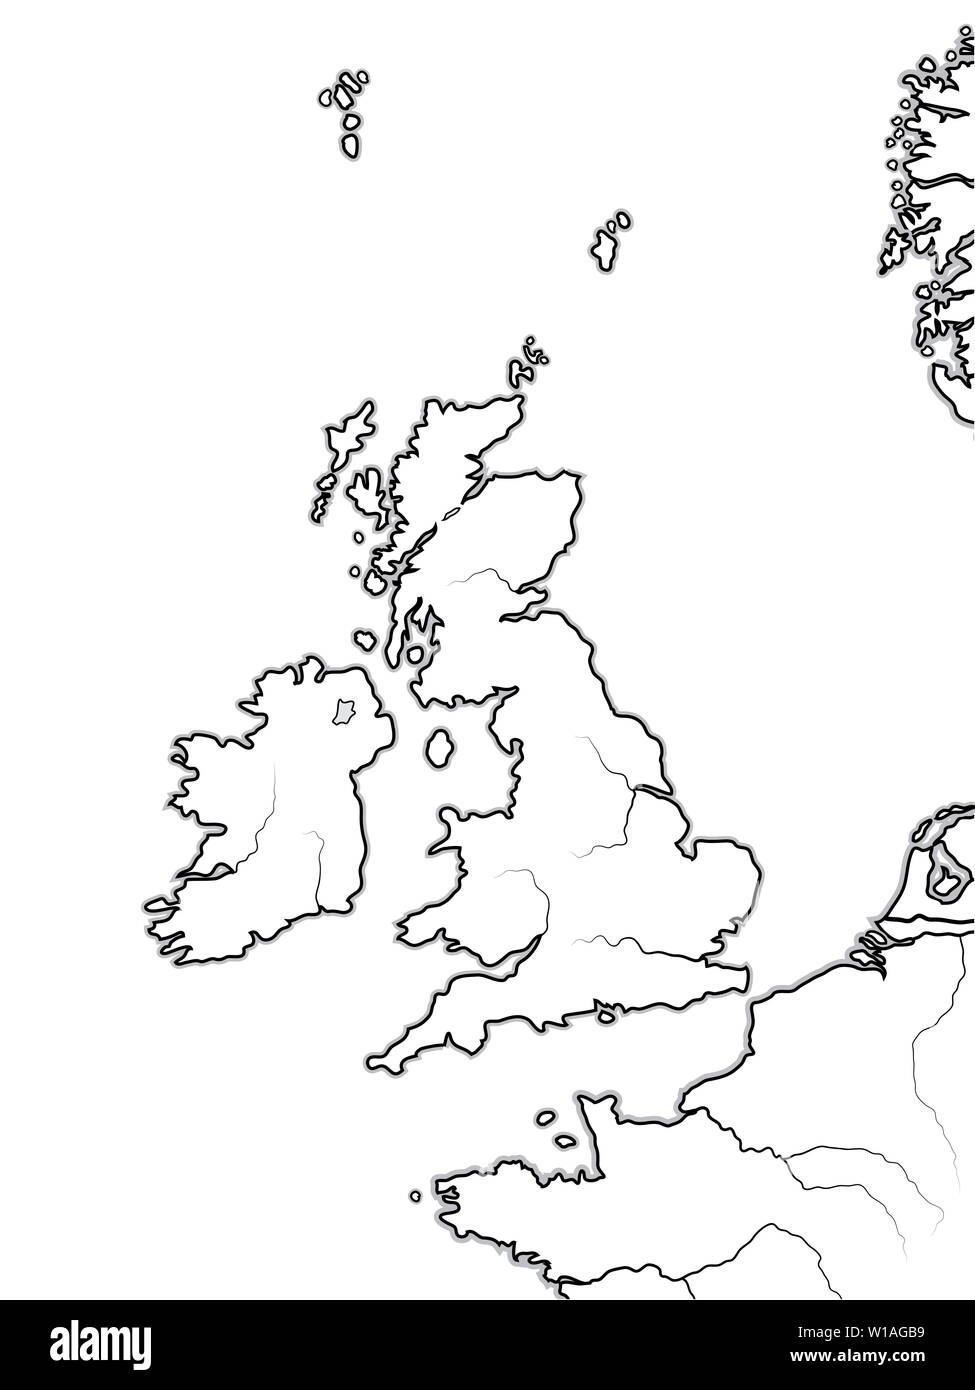 Carte de la Terres anglais : la Grande-Bretagne (Royaume-Uni) - Angleterre, Ecosse, Pays de Galles, et en Irlande. Îles britanniques, la mer du Nord, de la Manche. Banque D'Images